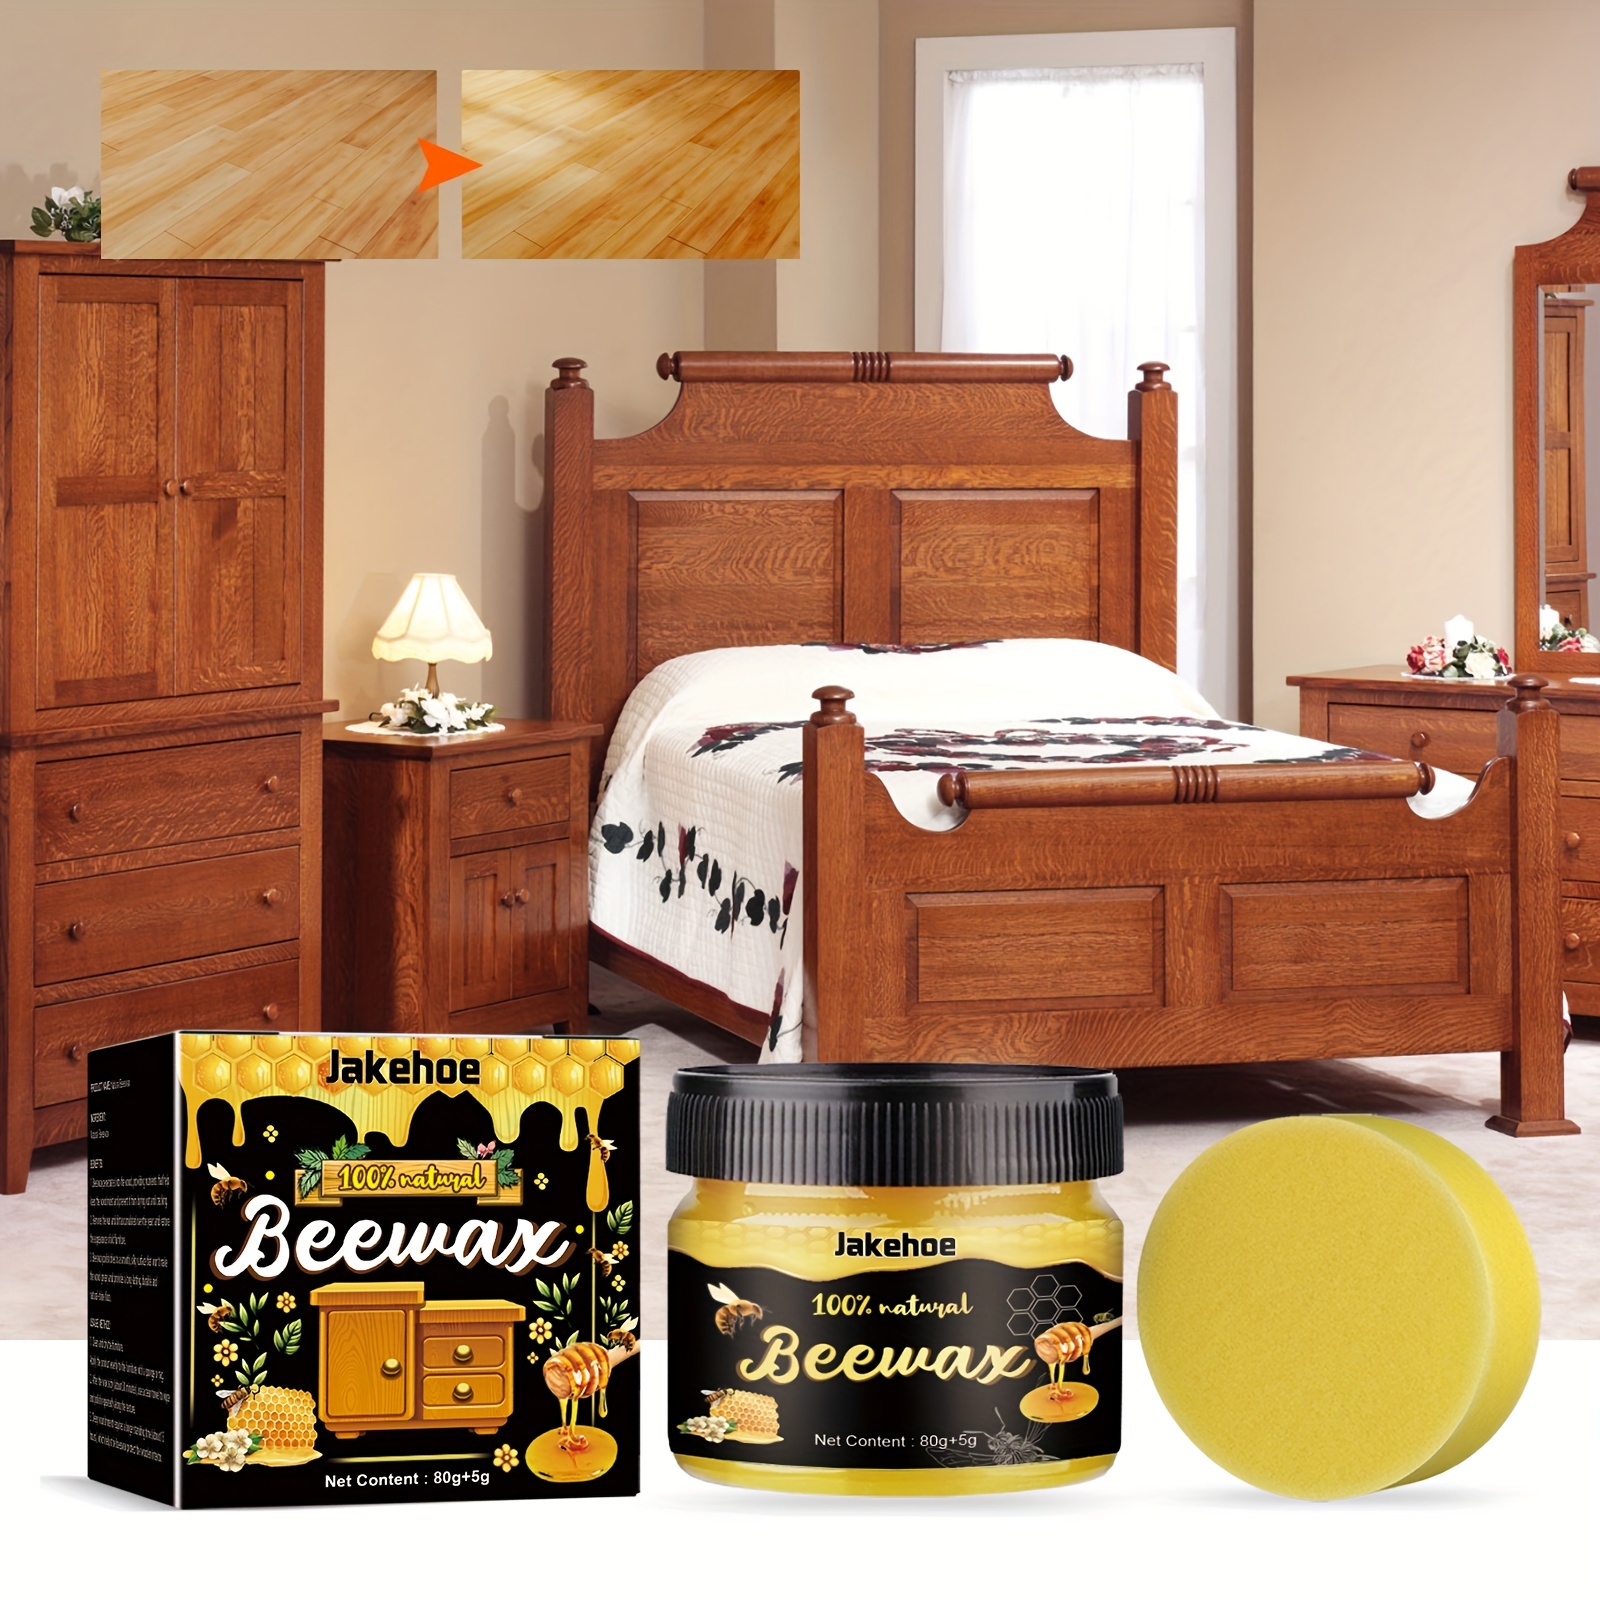 Paquete de 2 cera de abeja para condimentos de madera, limpiador y pulido  de muebles de madera natural multiusos para muebles, pisos, mesas, armarios